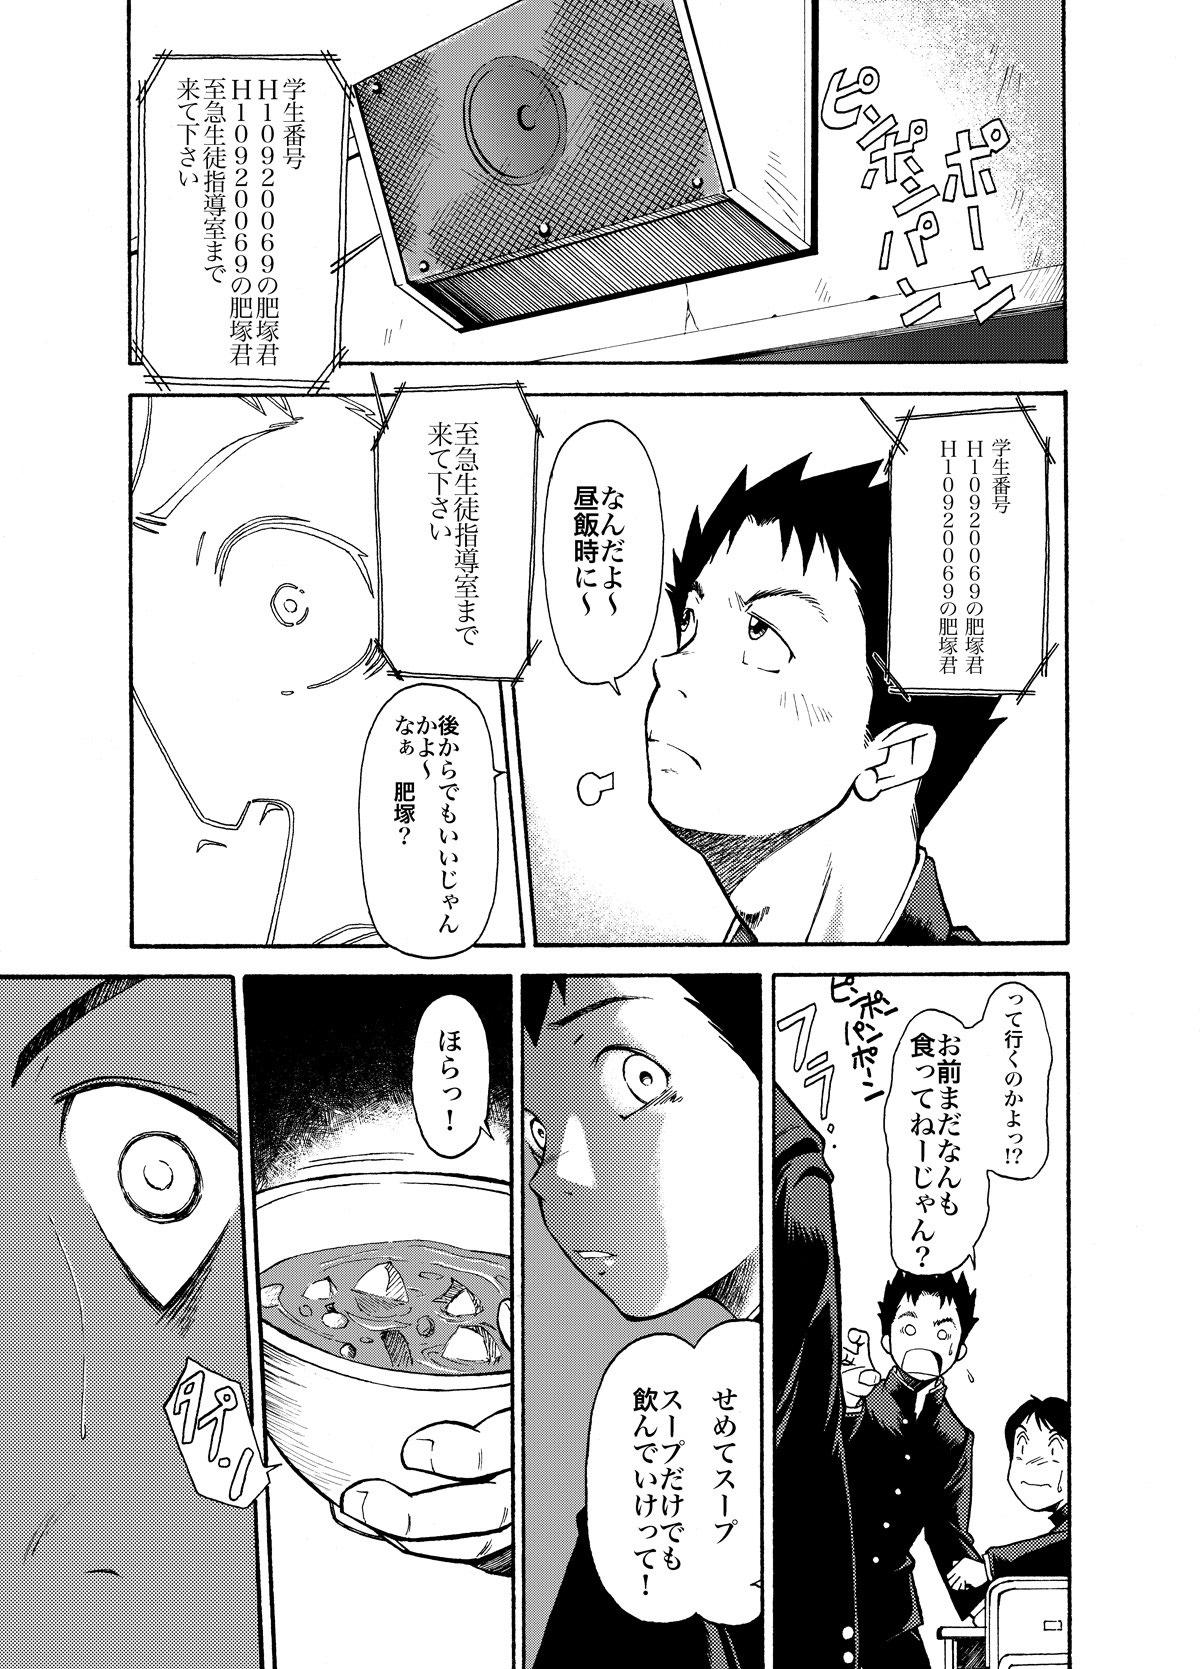 Audition KOWMEIISM - Oumagatoki & Reimei Anime - Page 9